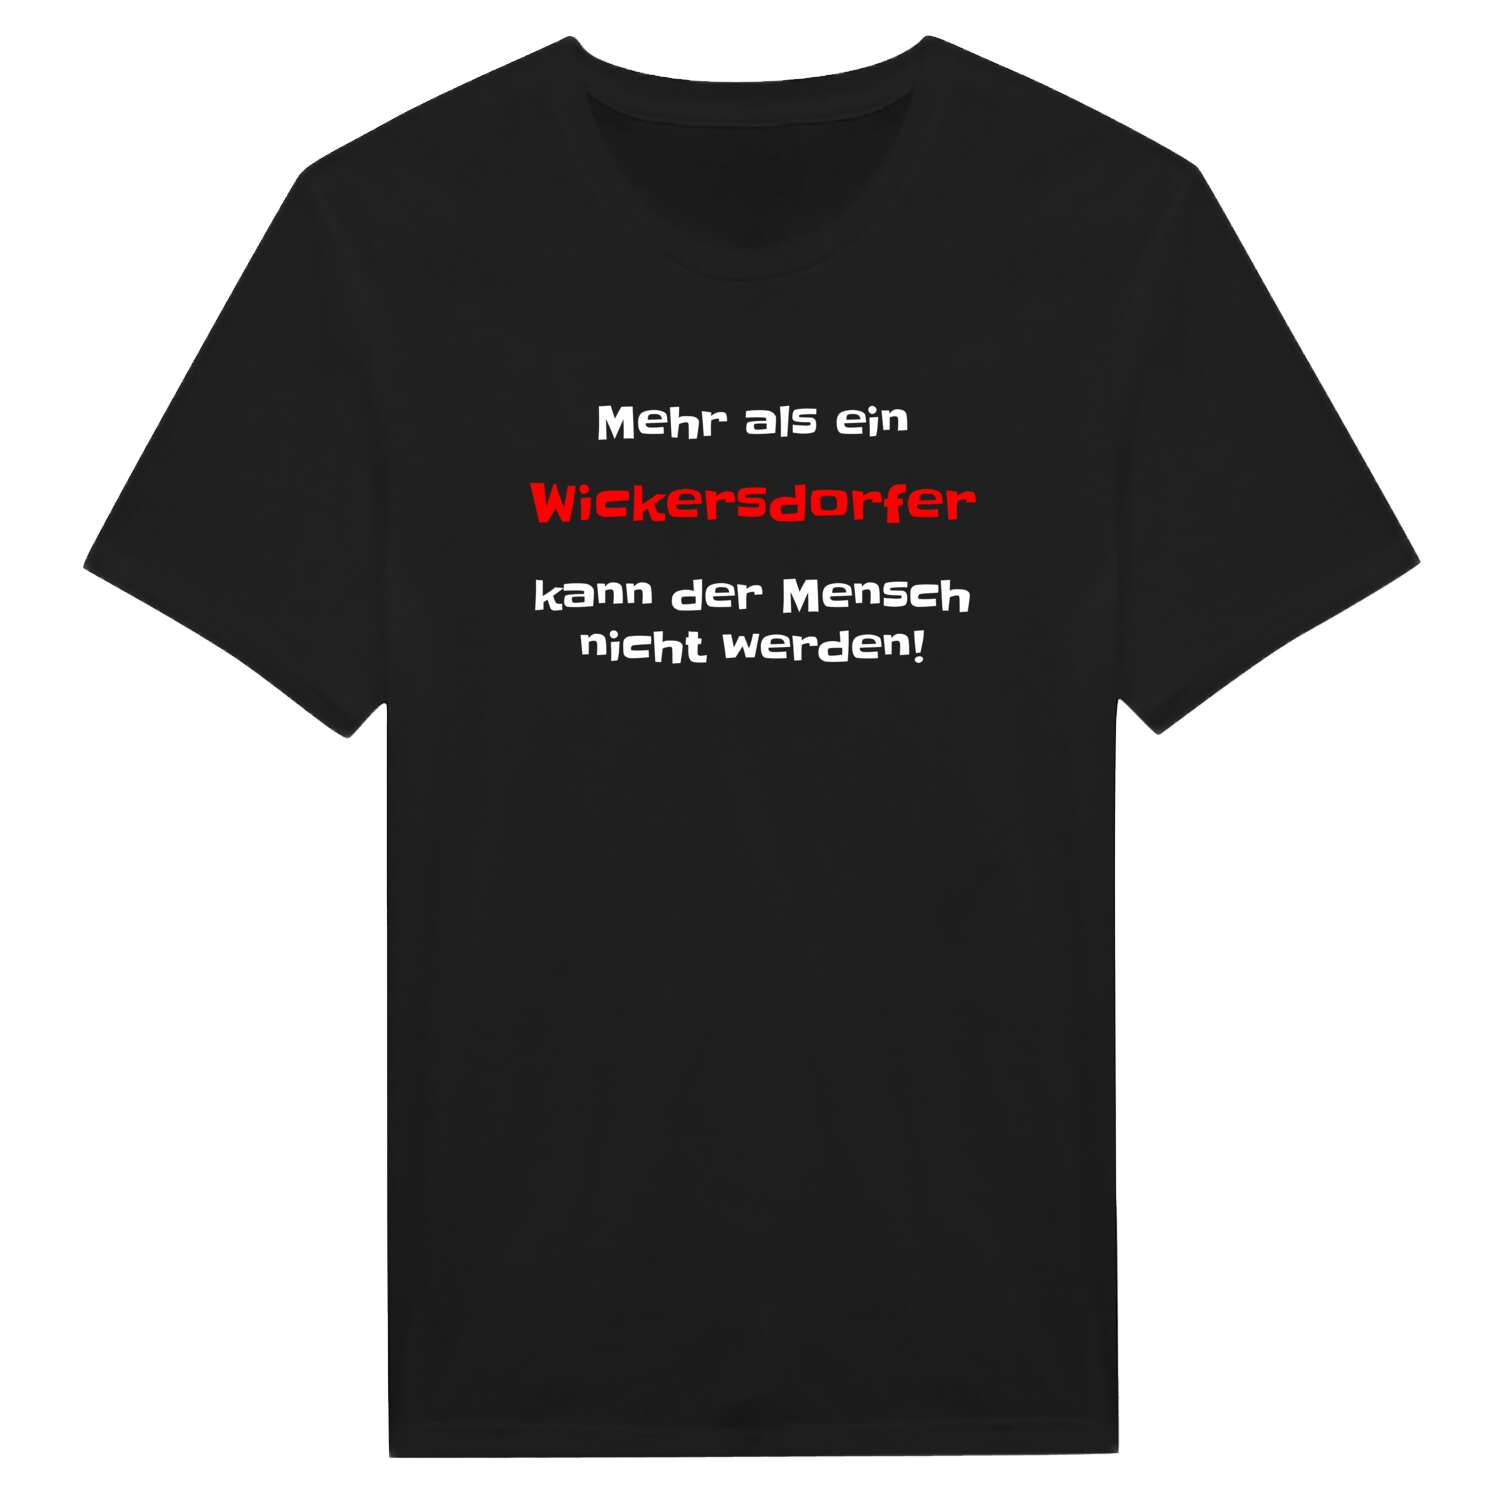 Wickersdorf T-Shirt »Mehr als ein«